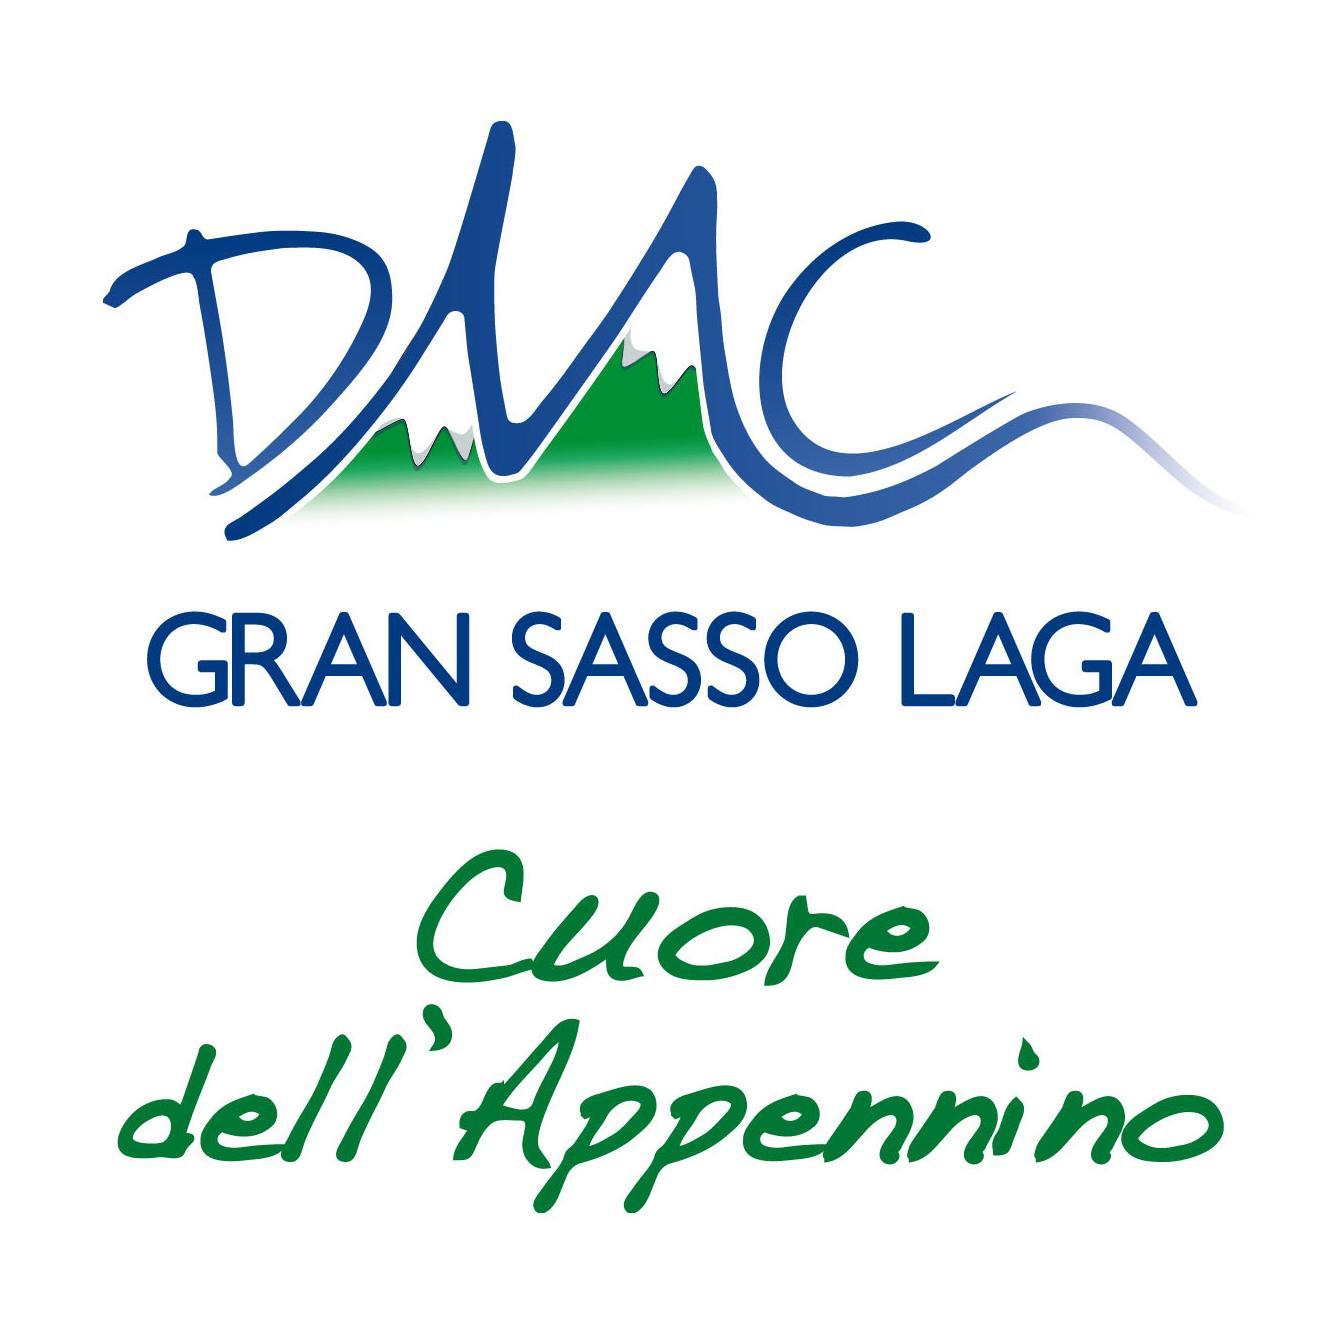 Destination Management Company (DMC) che opera nell'entroterra teramano.